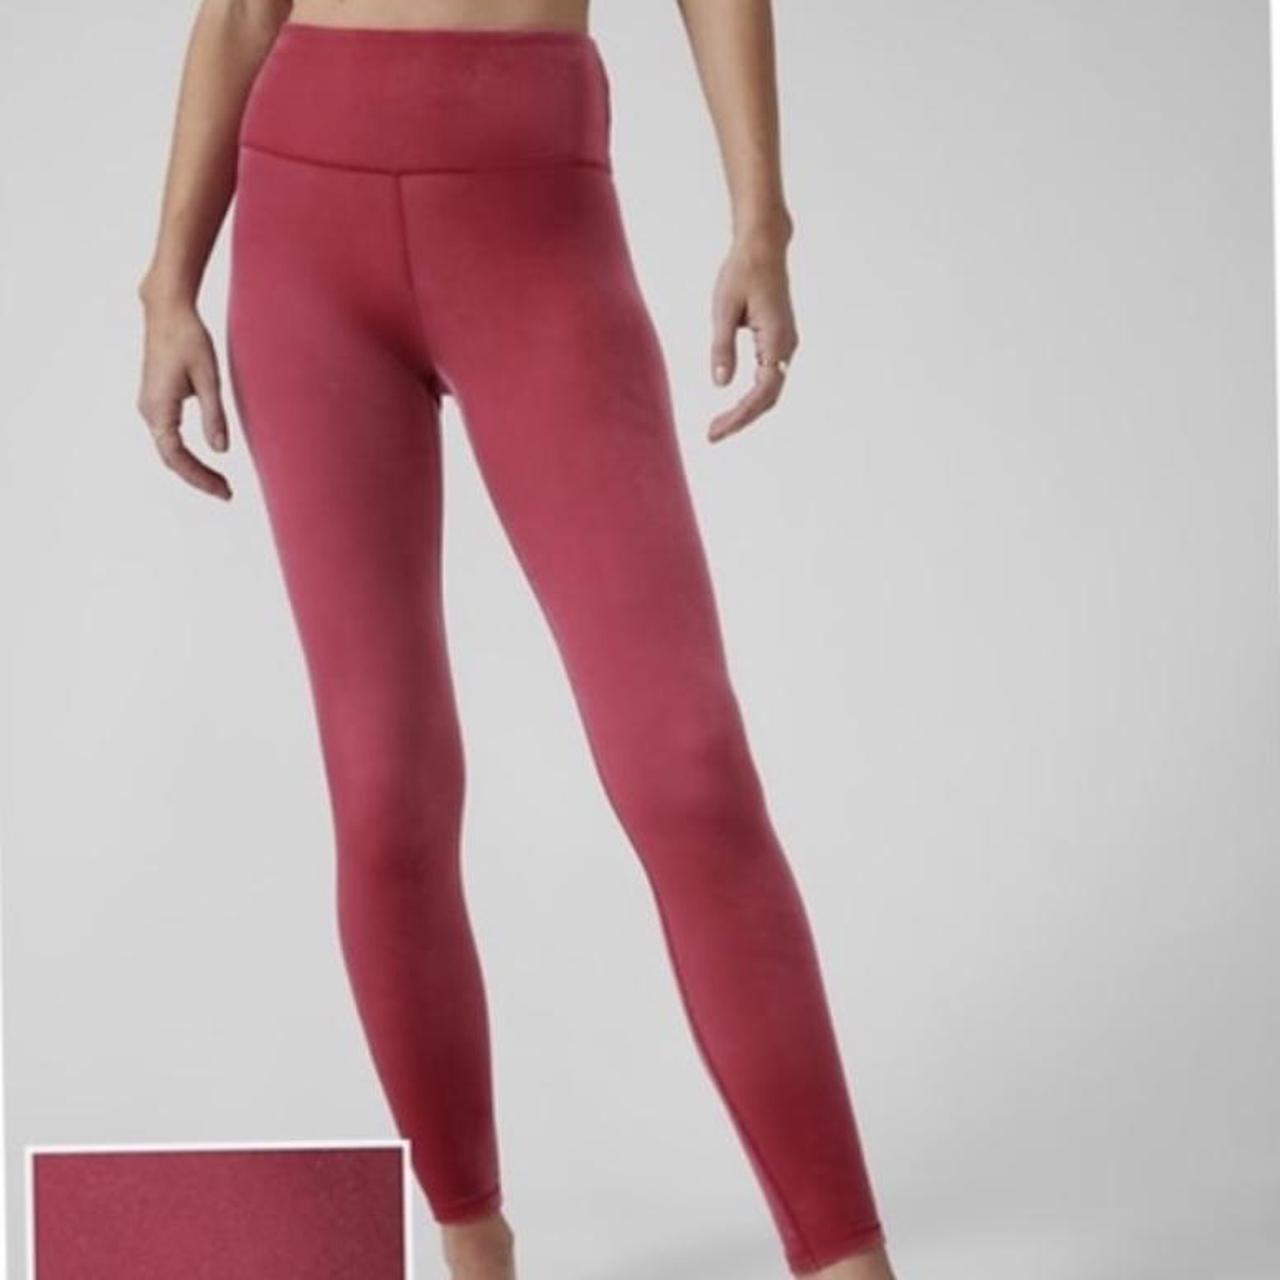 Athleta red/berry colored velvet elation leggings!